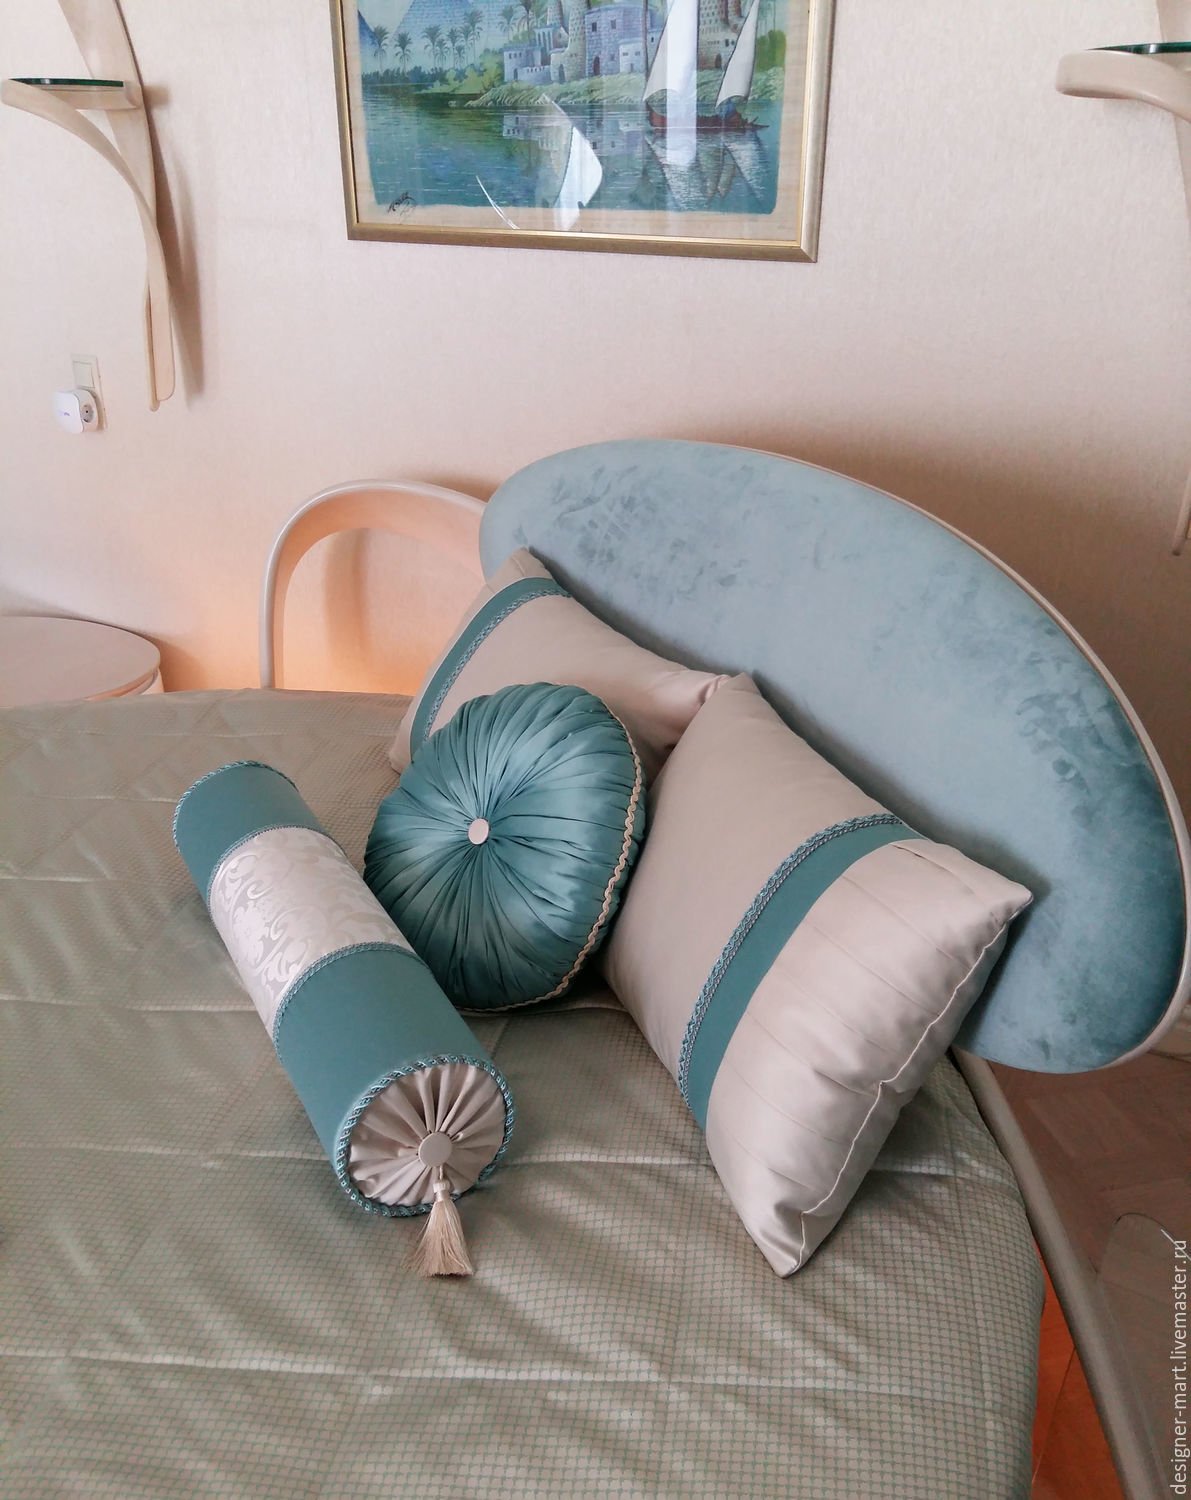 Преображаем спальню с помощью текстиля, легко и бюджетно 9